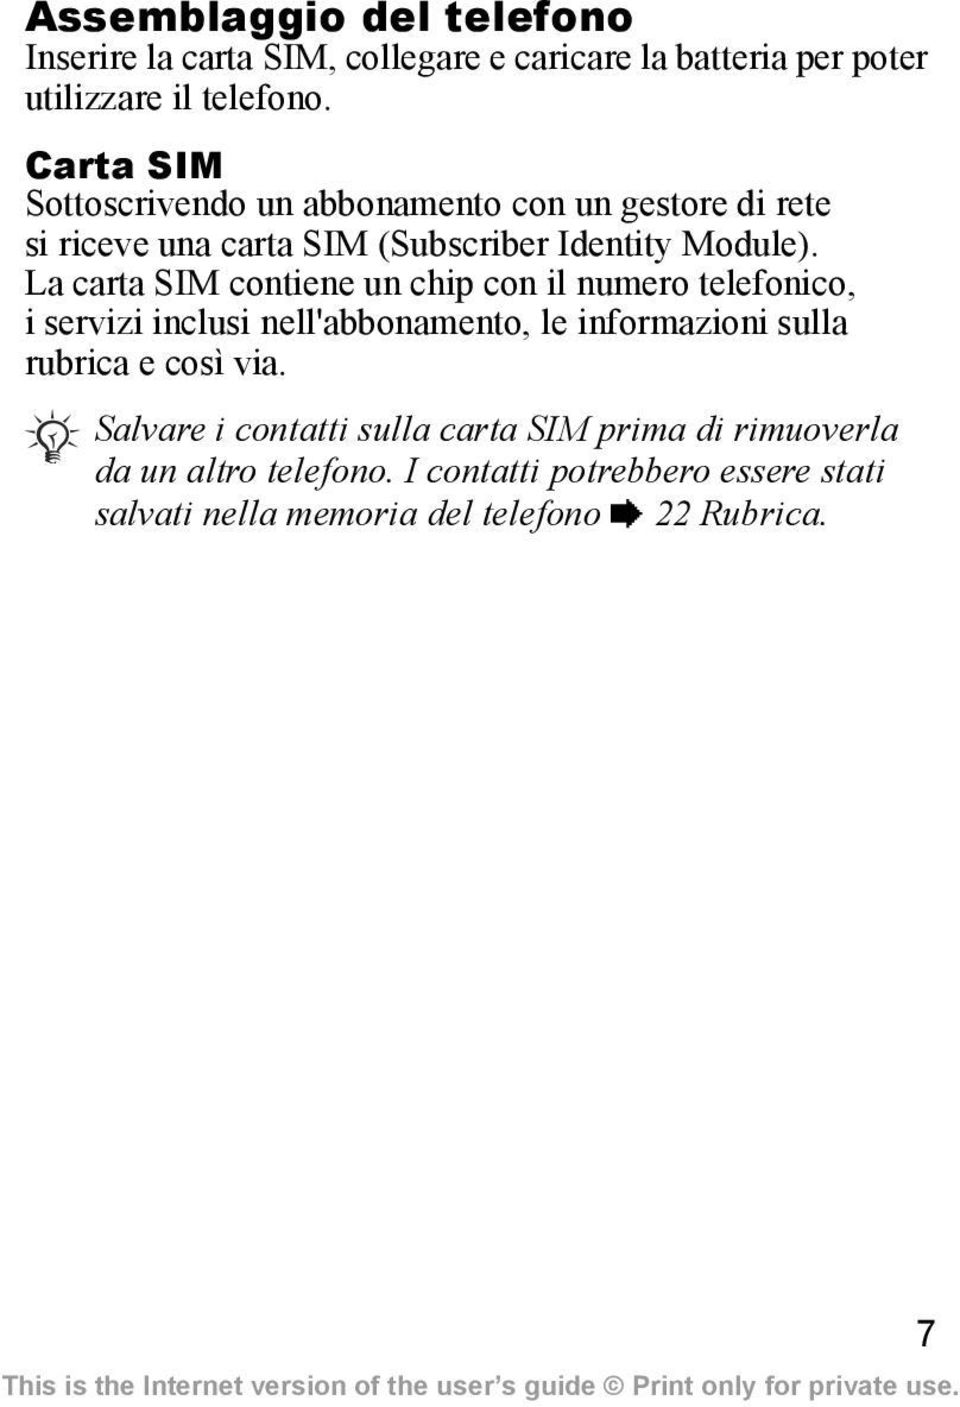 La carta SIM contiene un chip con il numero telefonico, i servizi inclusi nell'abbonamento, le informazioni sulla rubrica e così via.